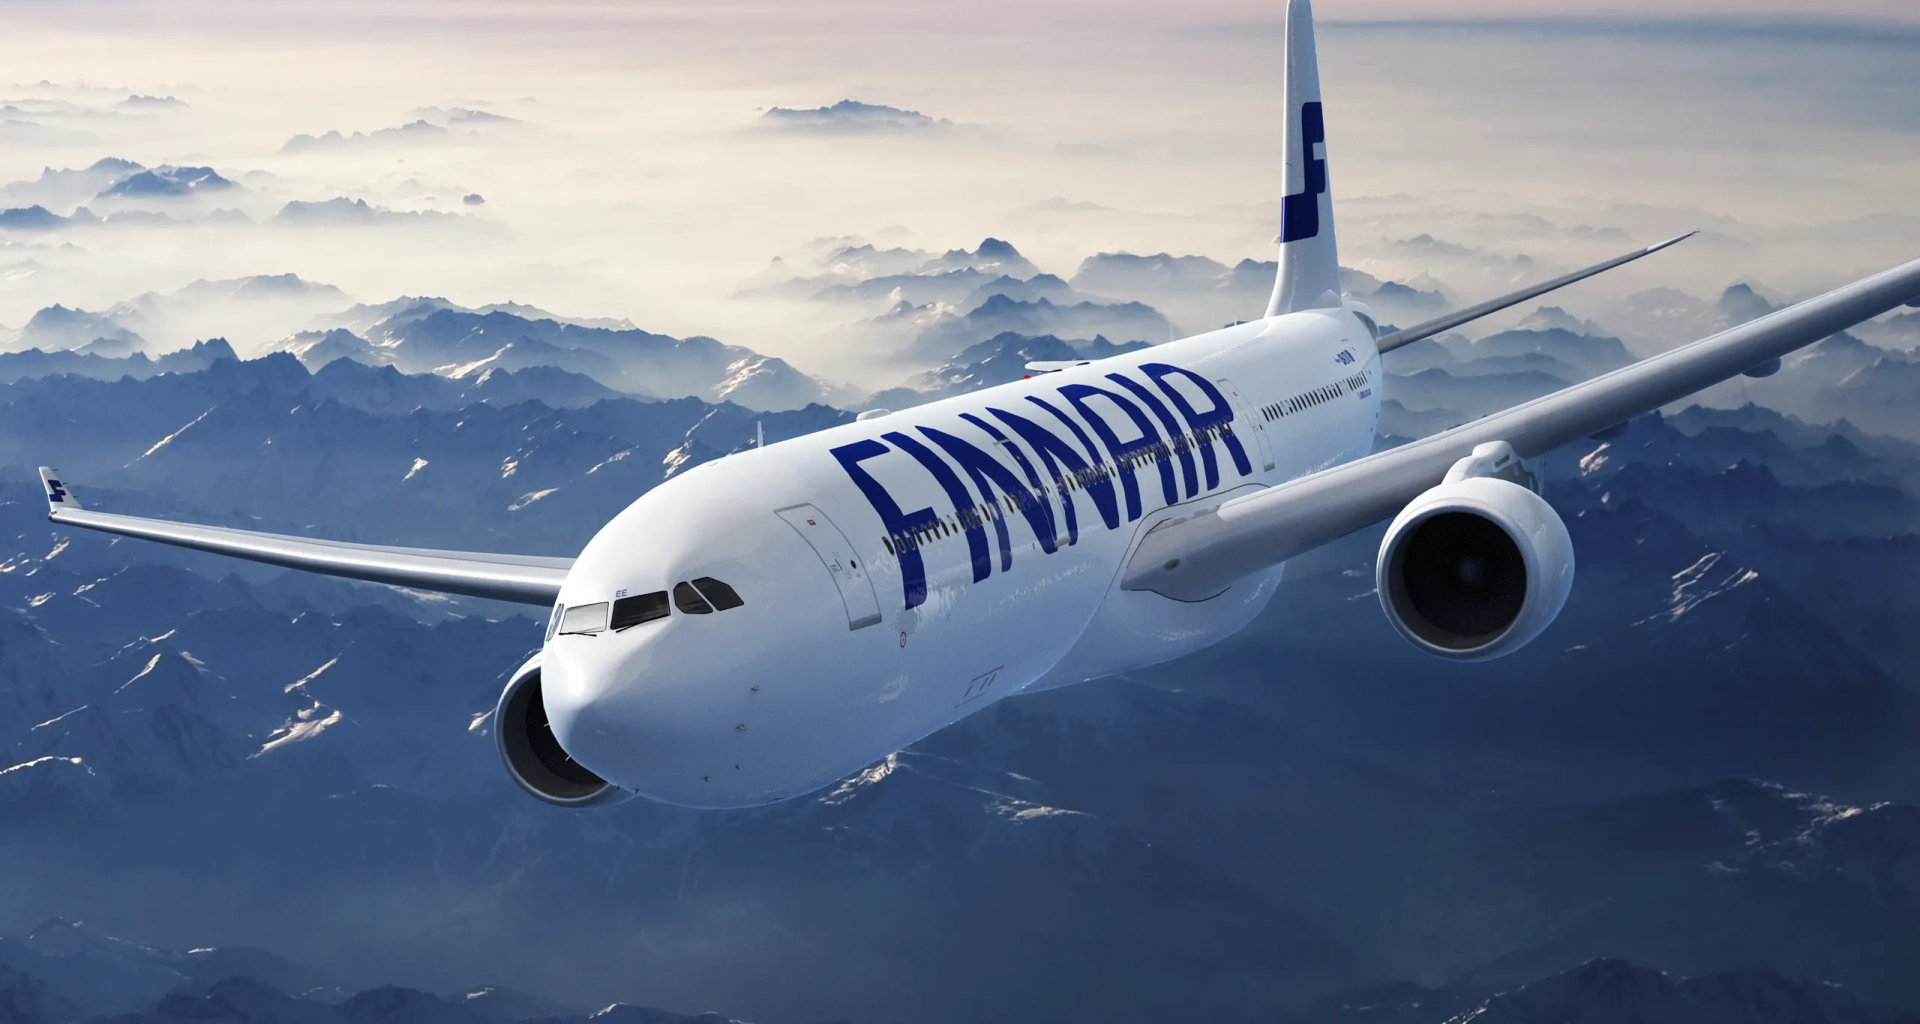 Finnair aircraft airborne